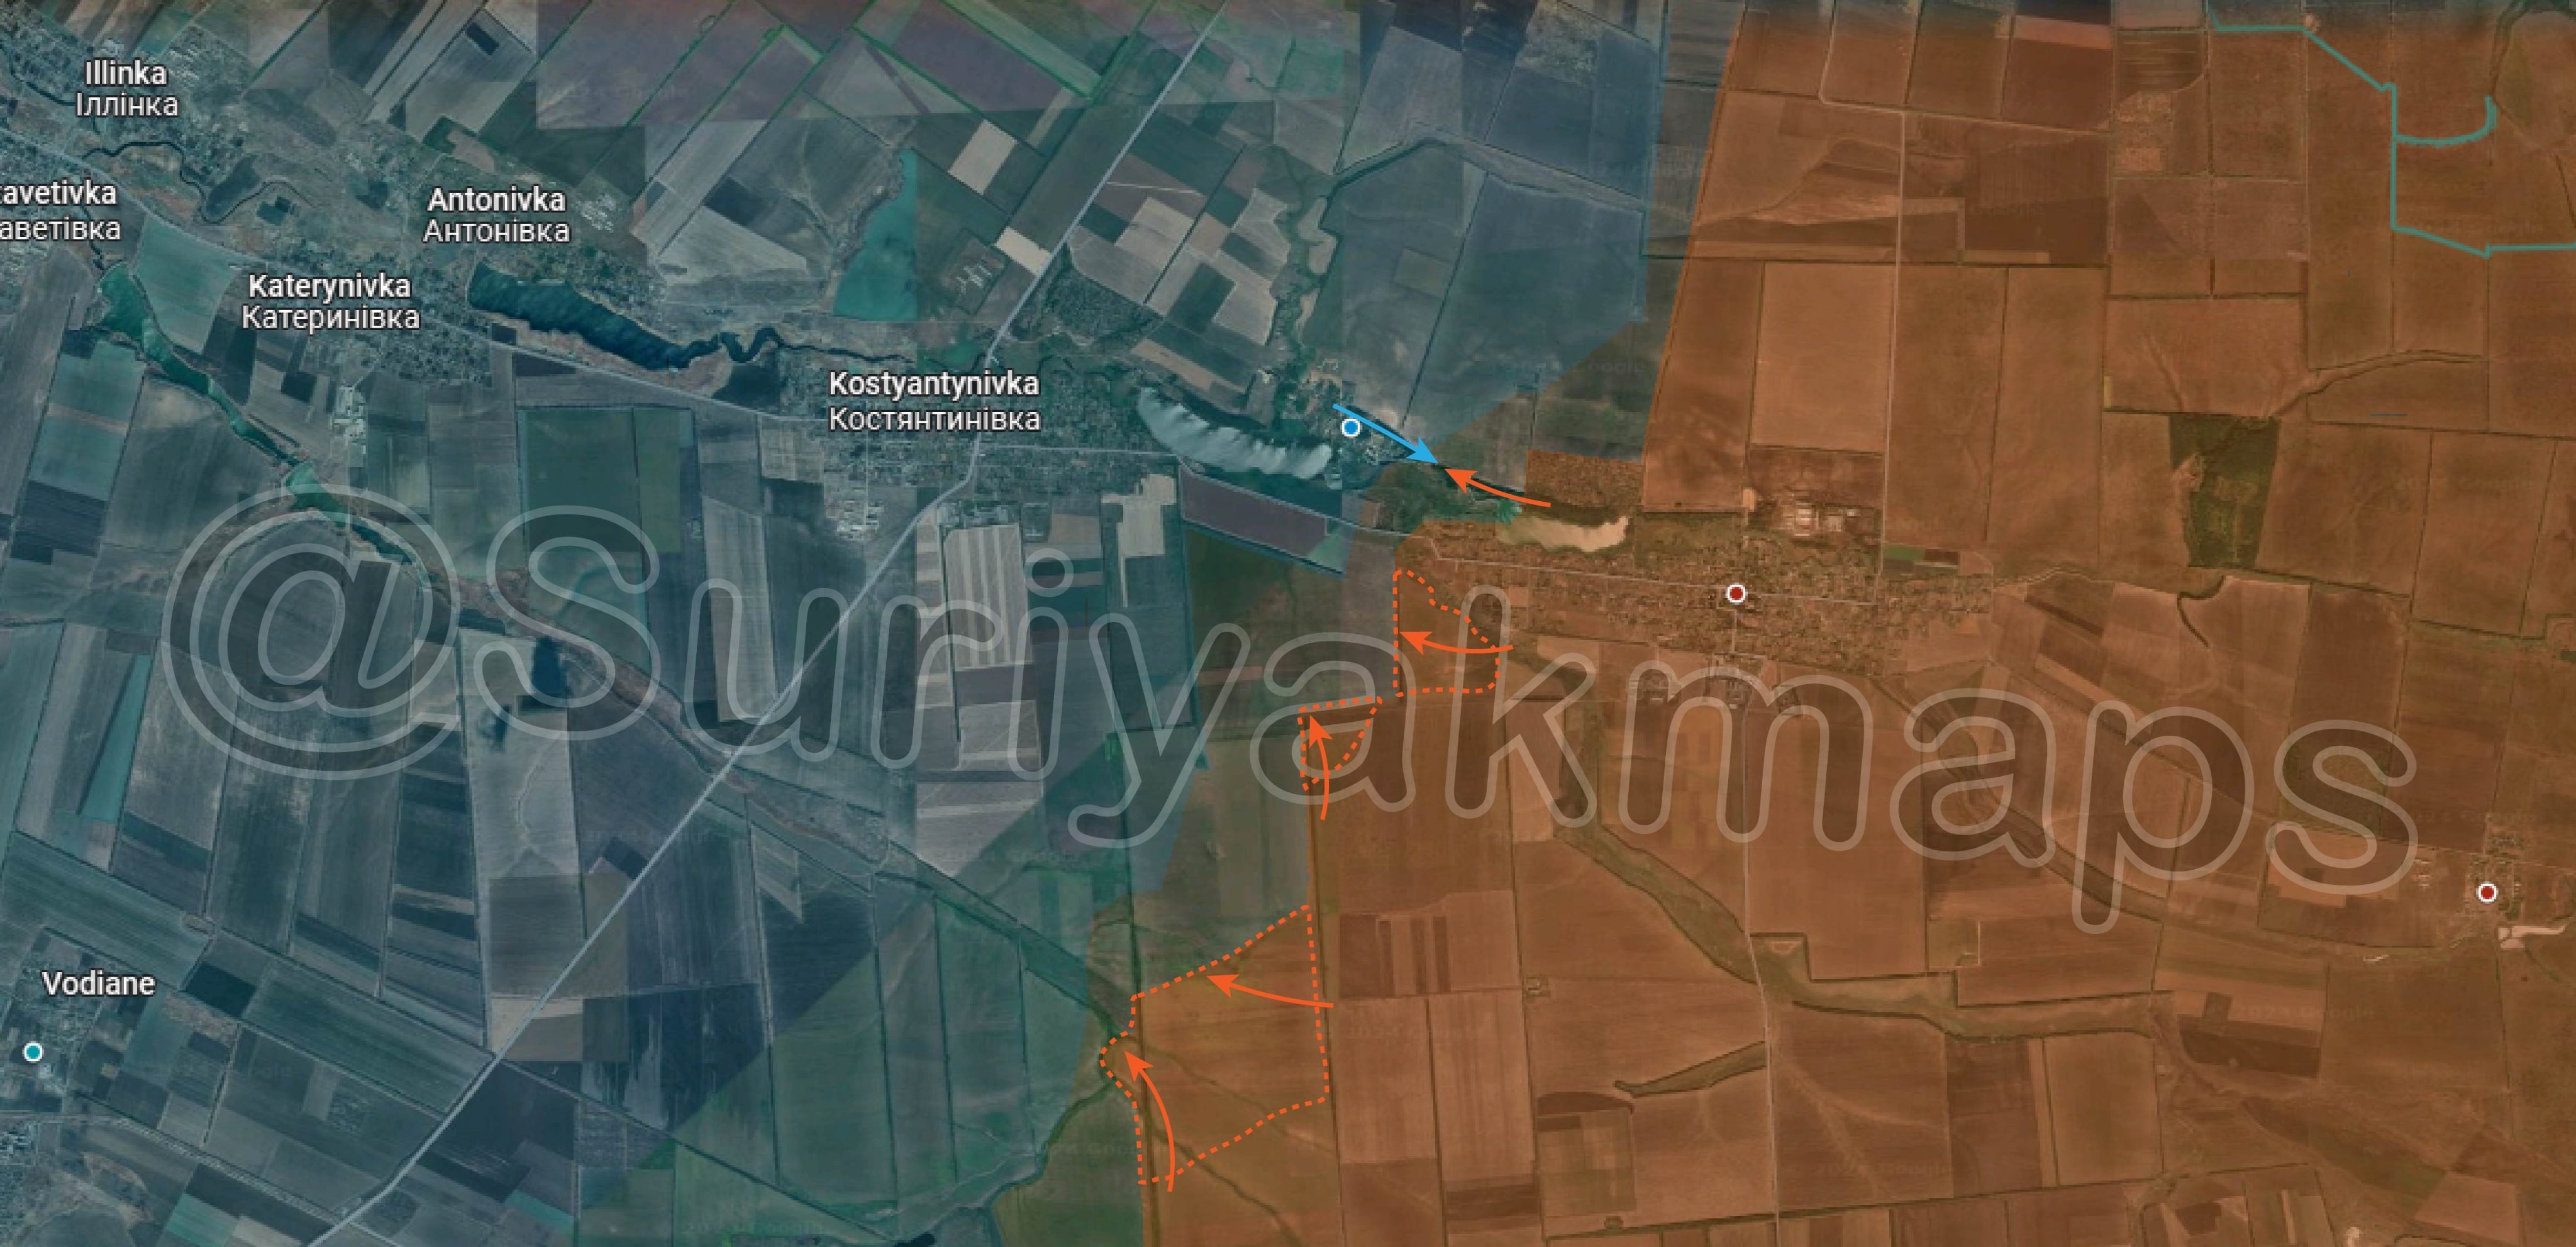 Bản đồ chiến sự Ukraine tại Kostyantynivka - Ugledar ngày 2/5. Trong đó, Nga kiểm soát phần màu nâu, các mũi tên màu cam thể hiện hướng tấn công của họ và khu vực bao quanh bởi nét đứt màu cam là nơi lực lượng Moscow vừa giành được, lực lượng Kiev phản kích theo các mũi tên xanh (Ảnh: Suriyakmaps).